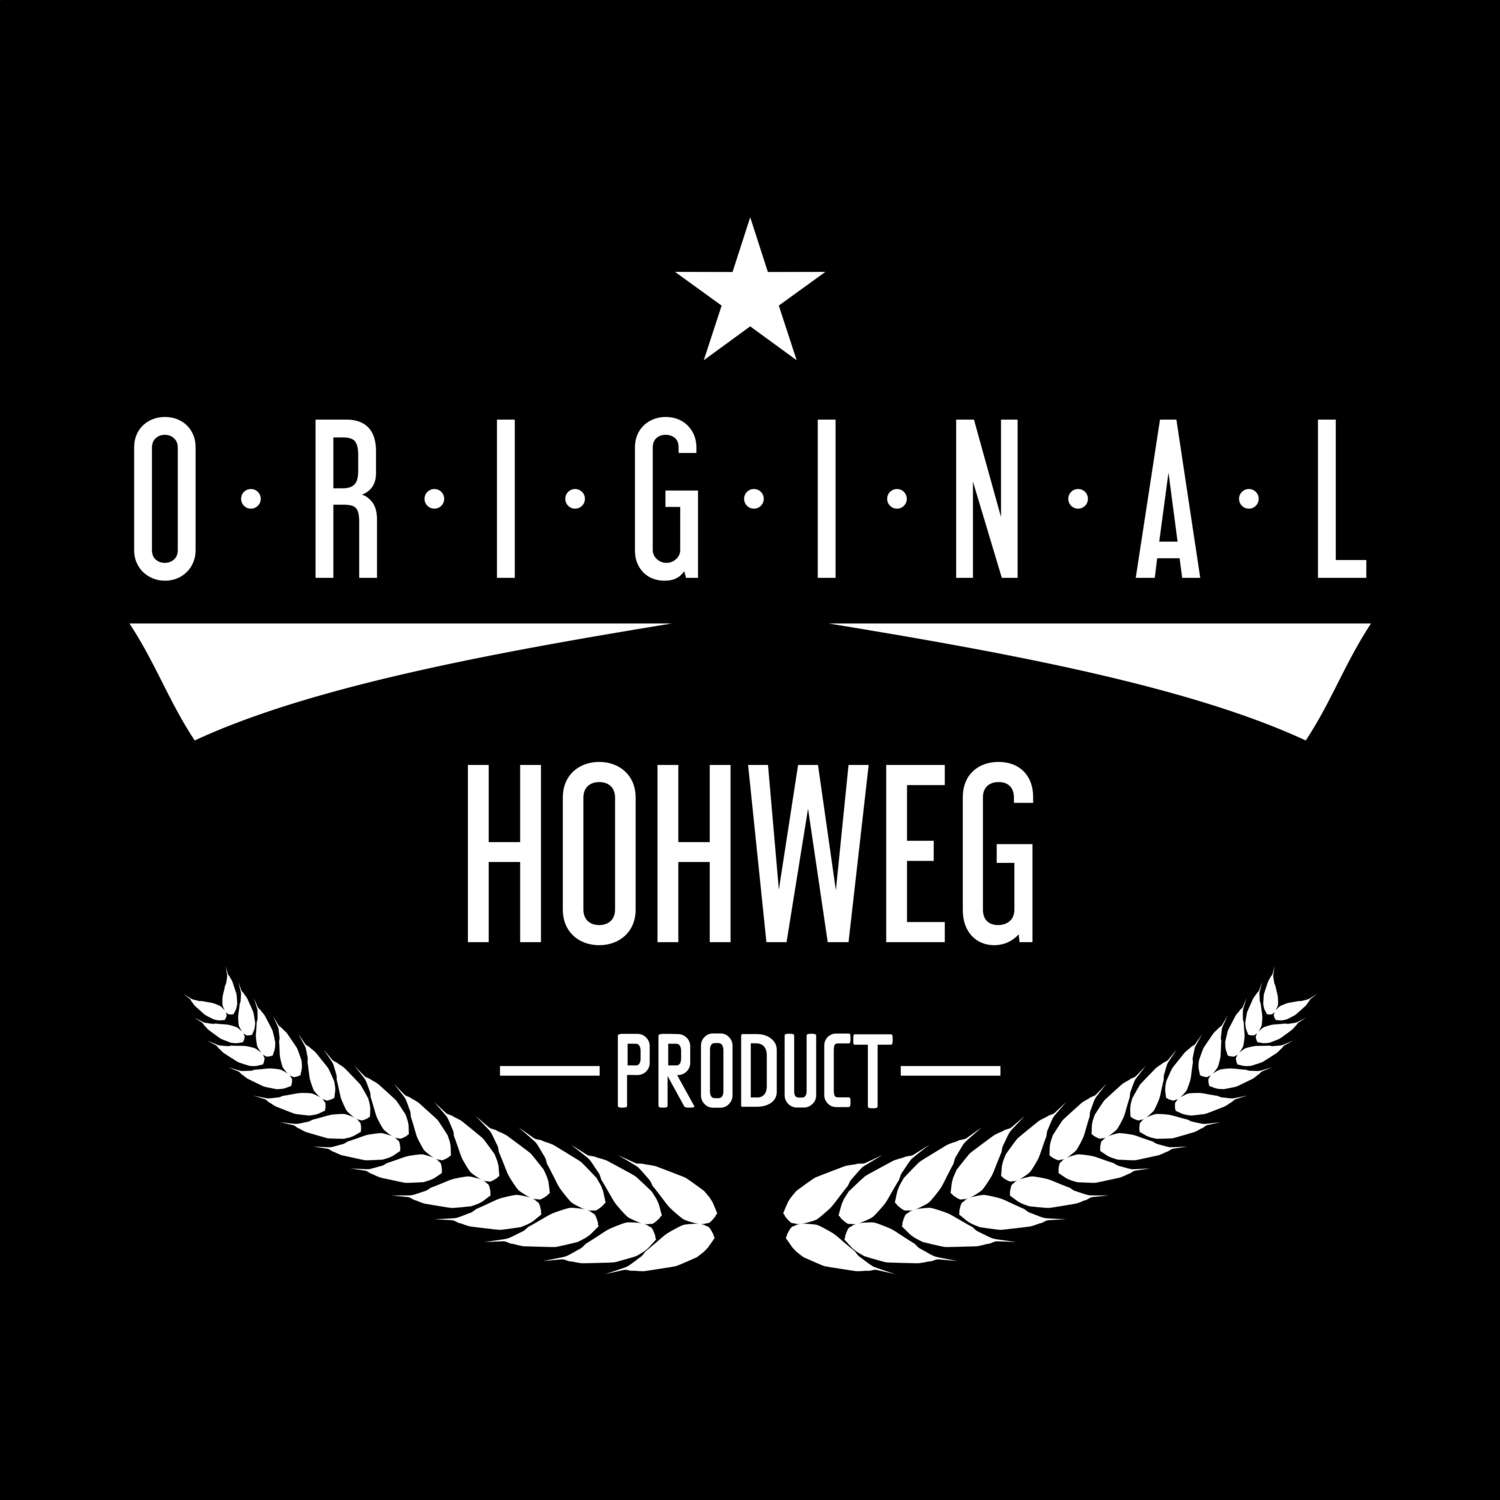 Hohweg T-Shirt »Original Product«